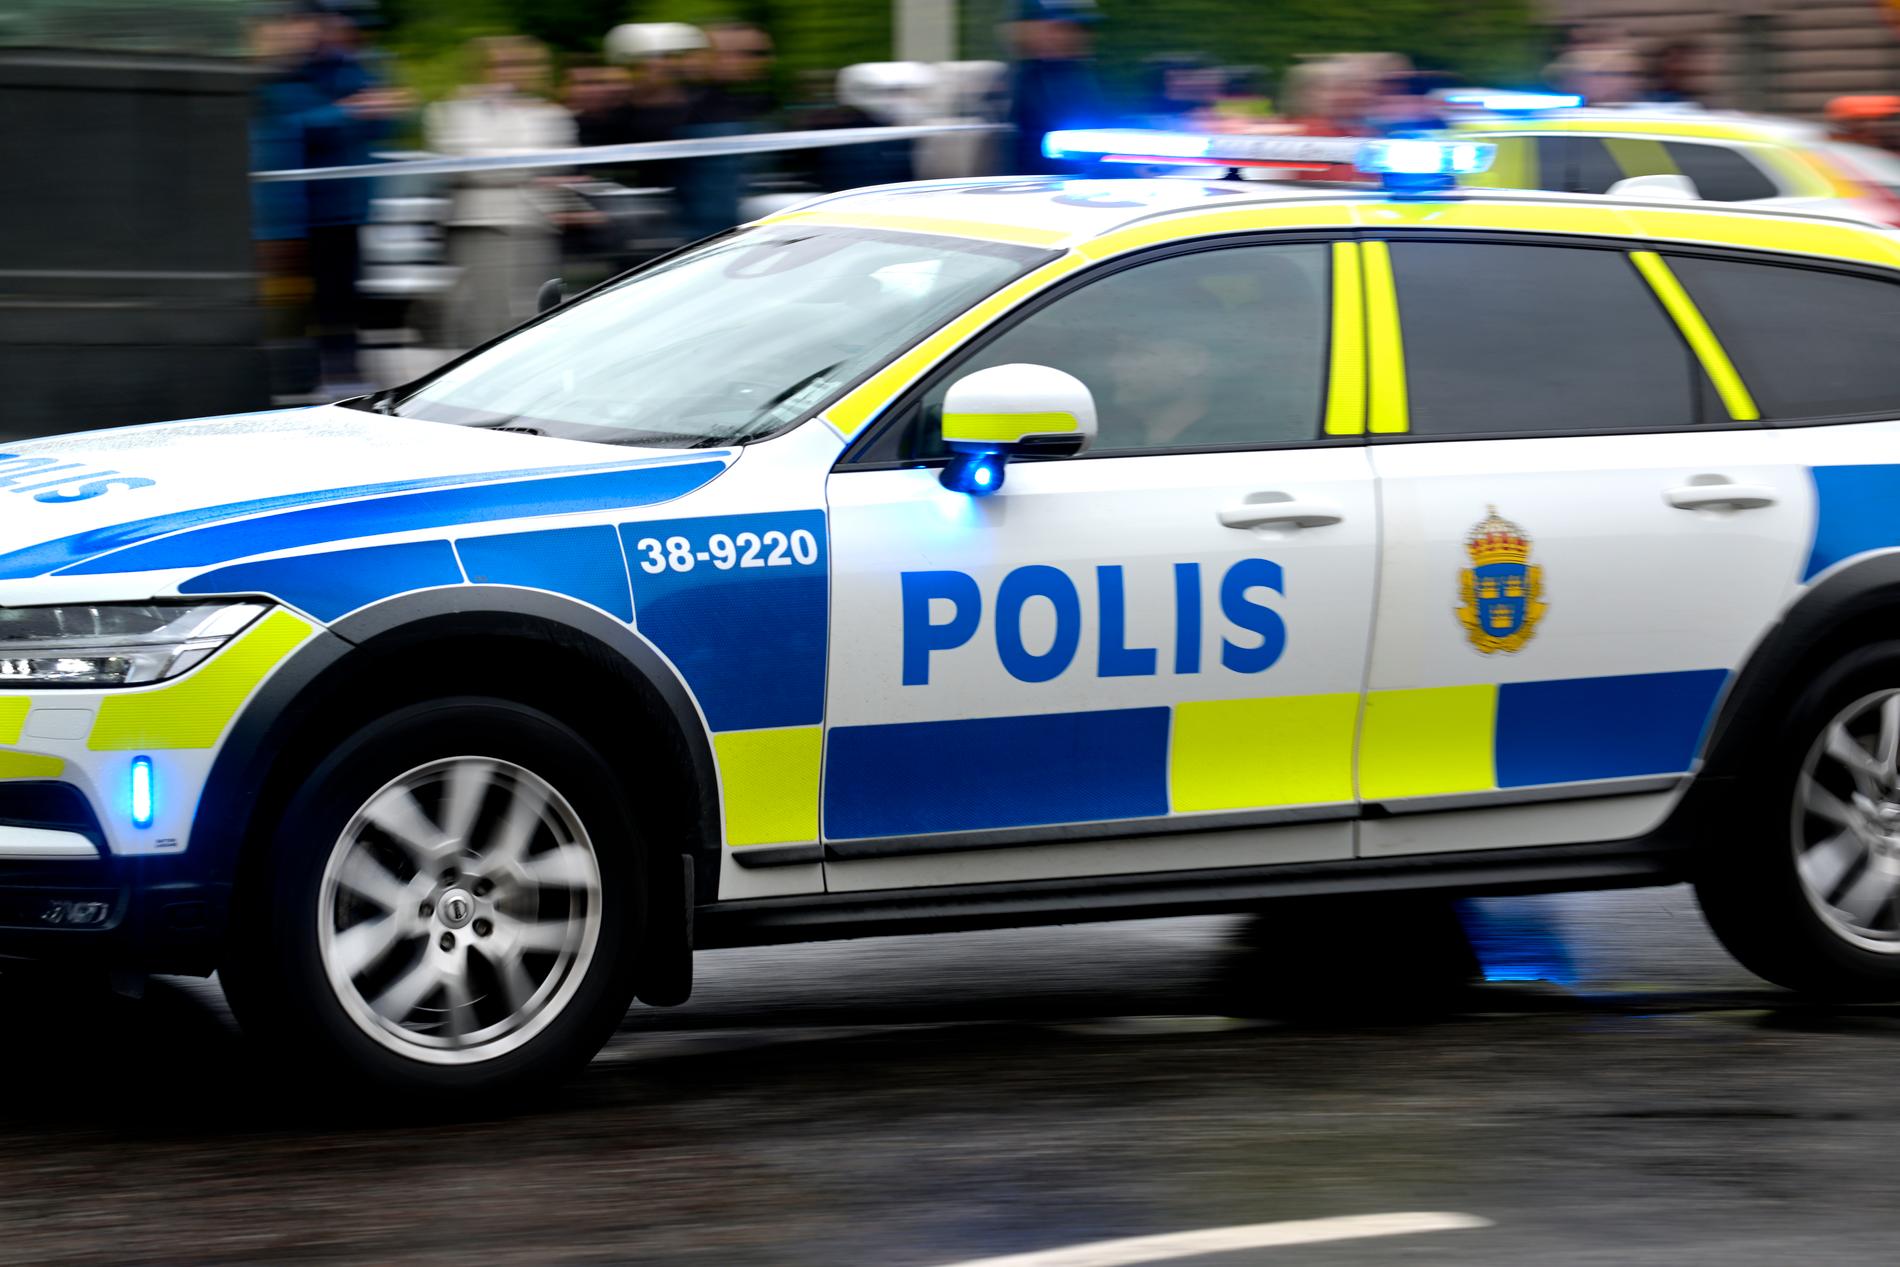 𝗢𝗿𝘂𝘀𝘁: Militären ber polis om hjälp på Orust | www.aftonbladet.se